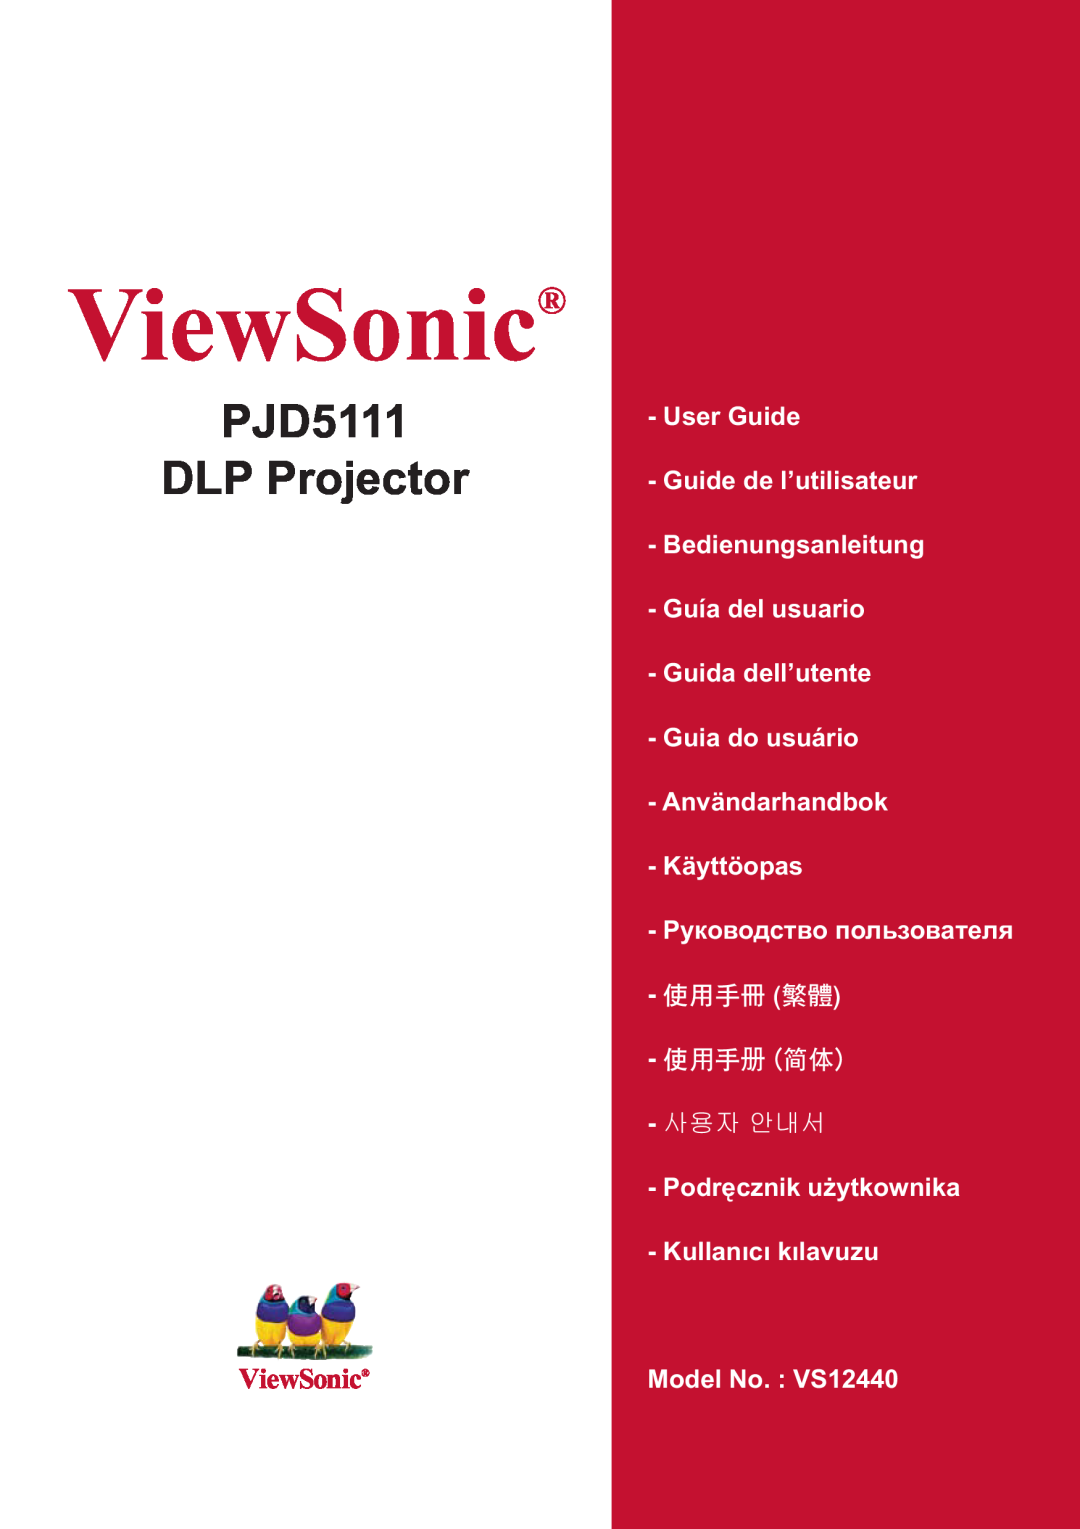 ViewSonic manual ViewSonic, PJD5111 DLP Projector, User Guide Guide de l’utilisateur, Model No. VS12440 